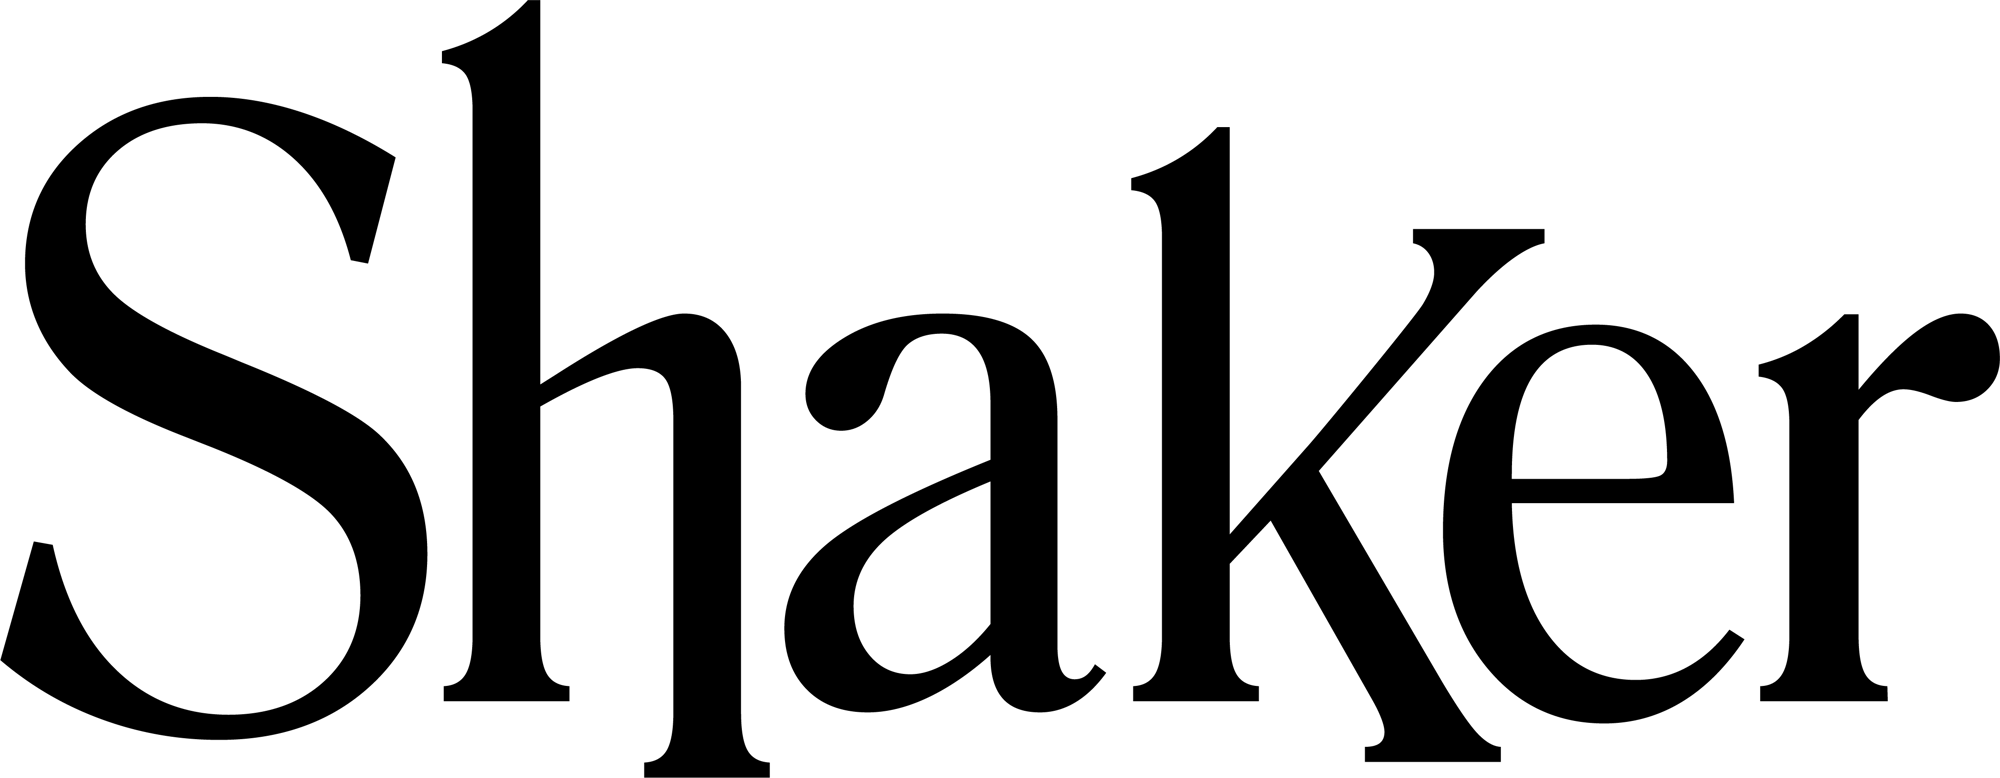 Shaker_Logotype-Black